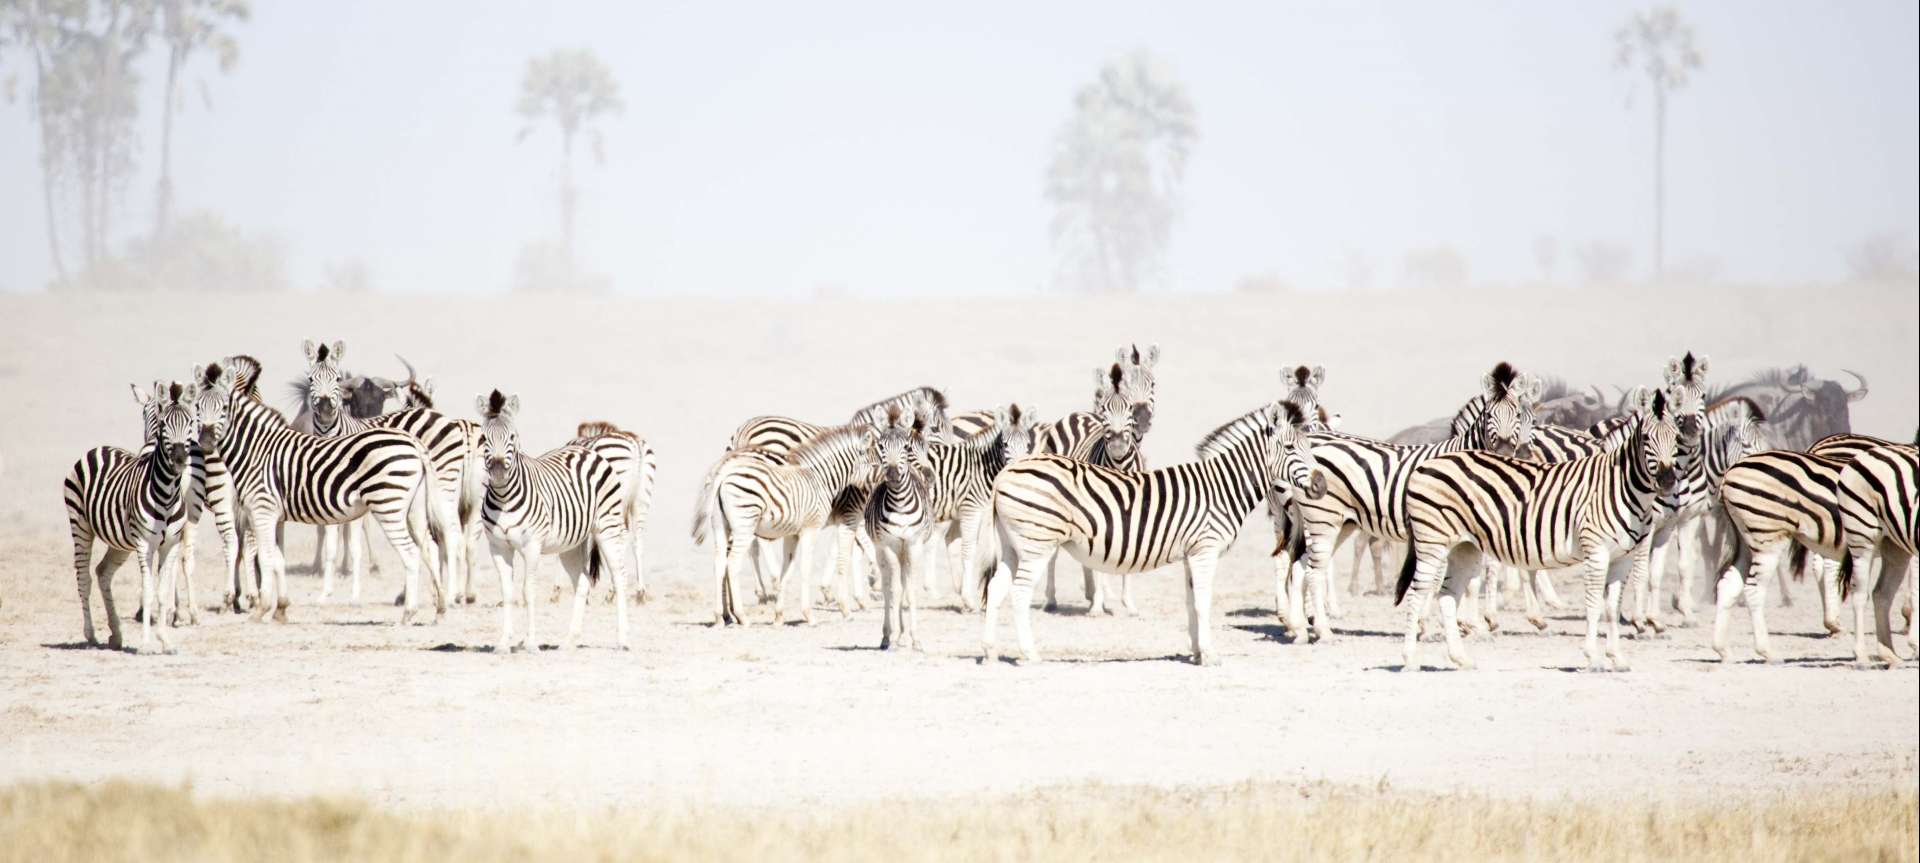 Zebra in Botswana - a dazzling sight of stripes